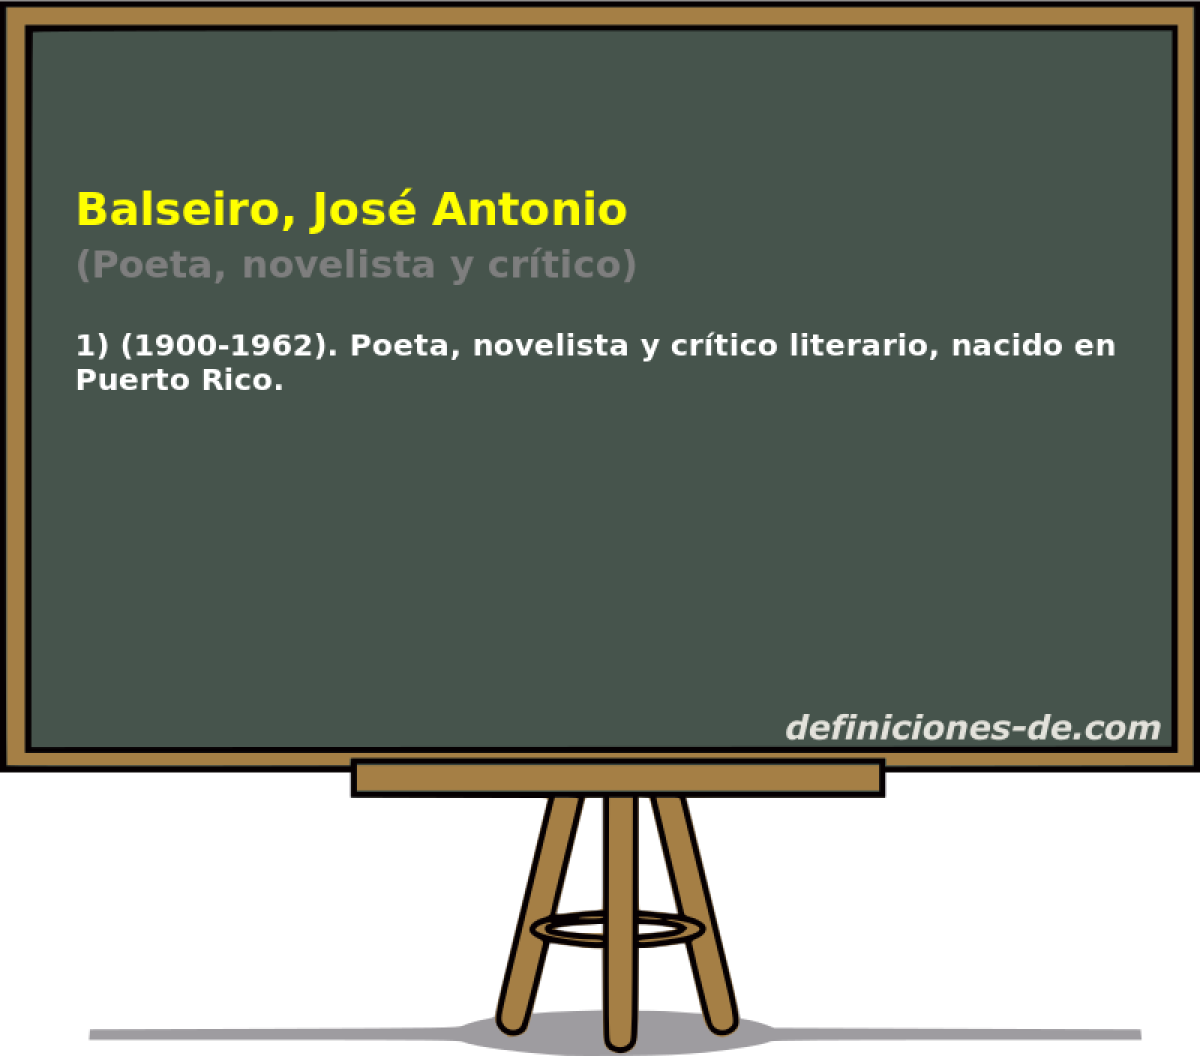 Balseiro, Jos Antonio (Poeta, novelista y crtico)